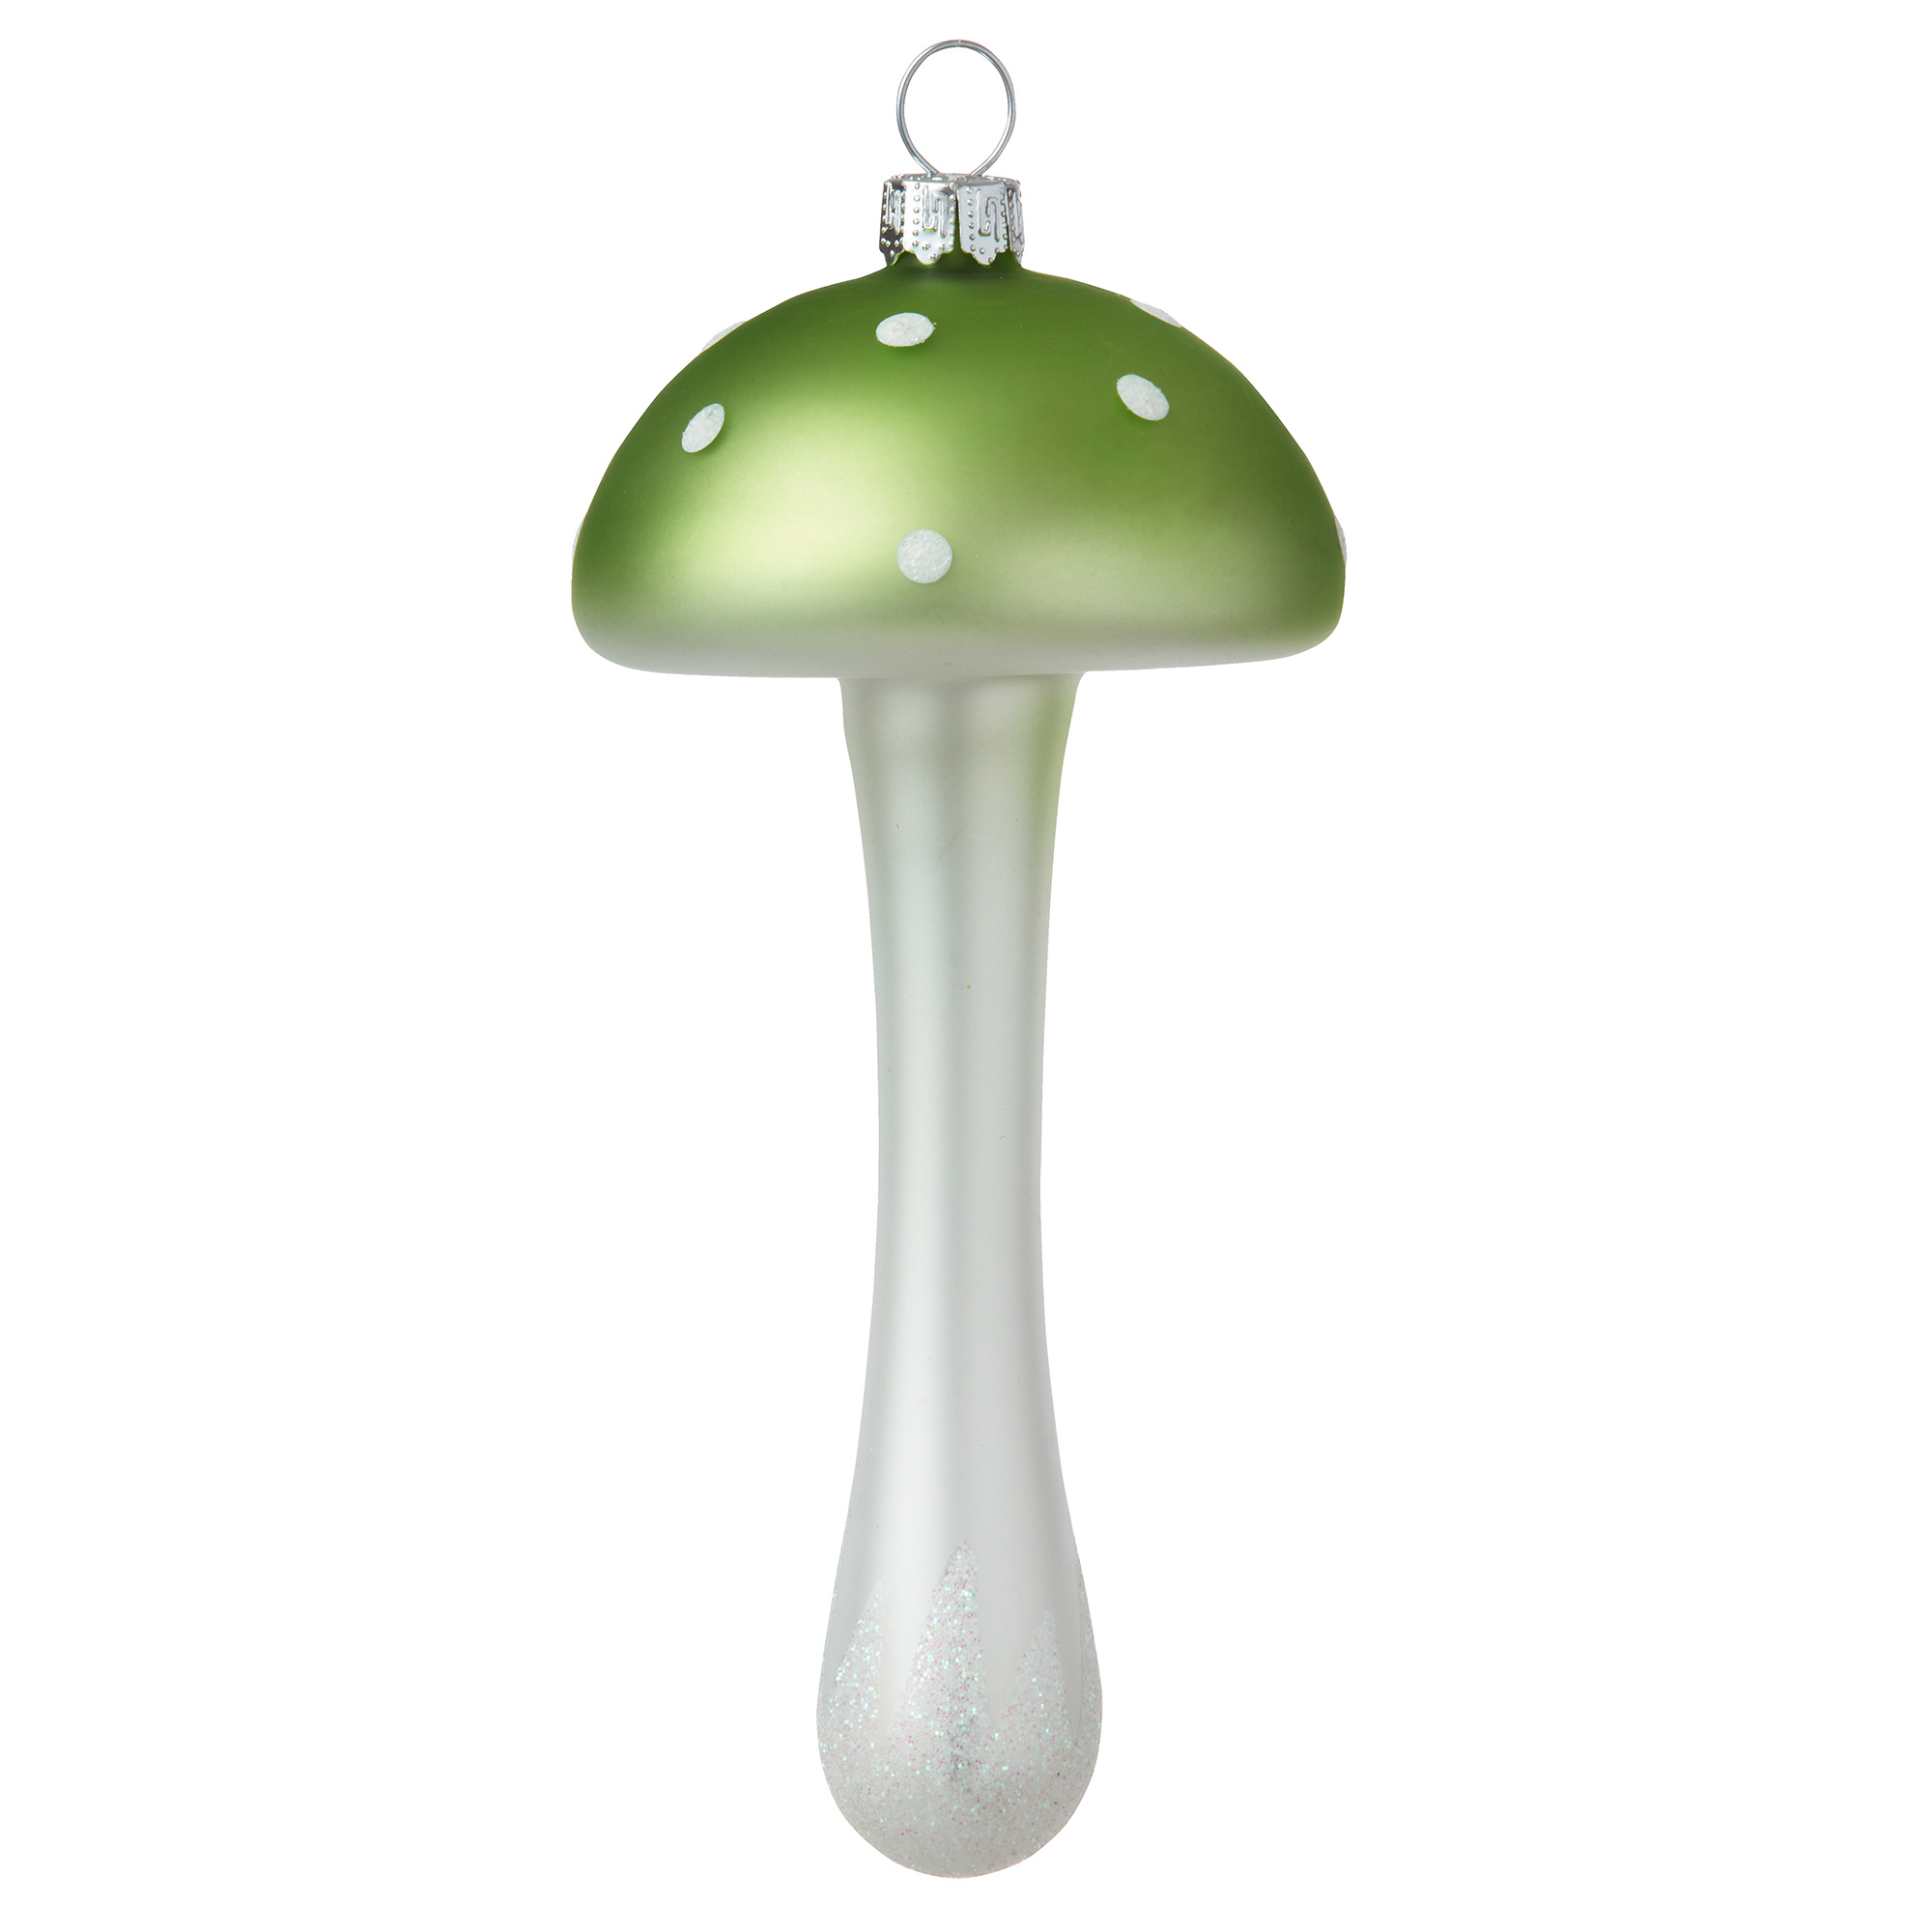 Bungalow Weihnachtsbaumschmuck Glas Pilz H13 cm grün-weiß 